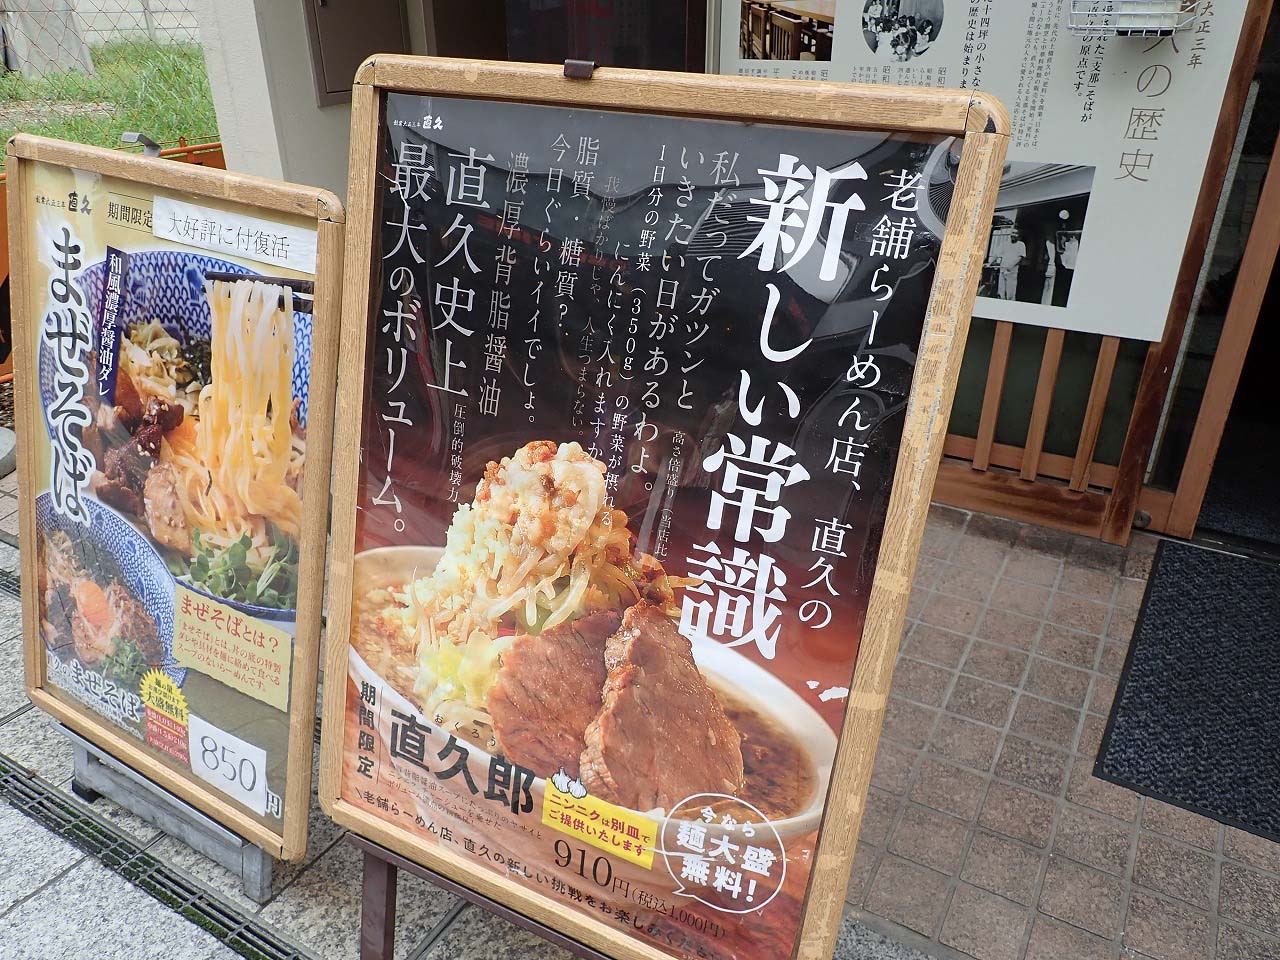 テレビでまぜそばが紹介された『麺処直久 本川越店』